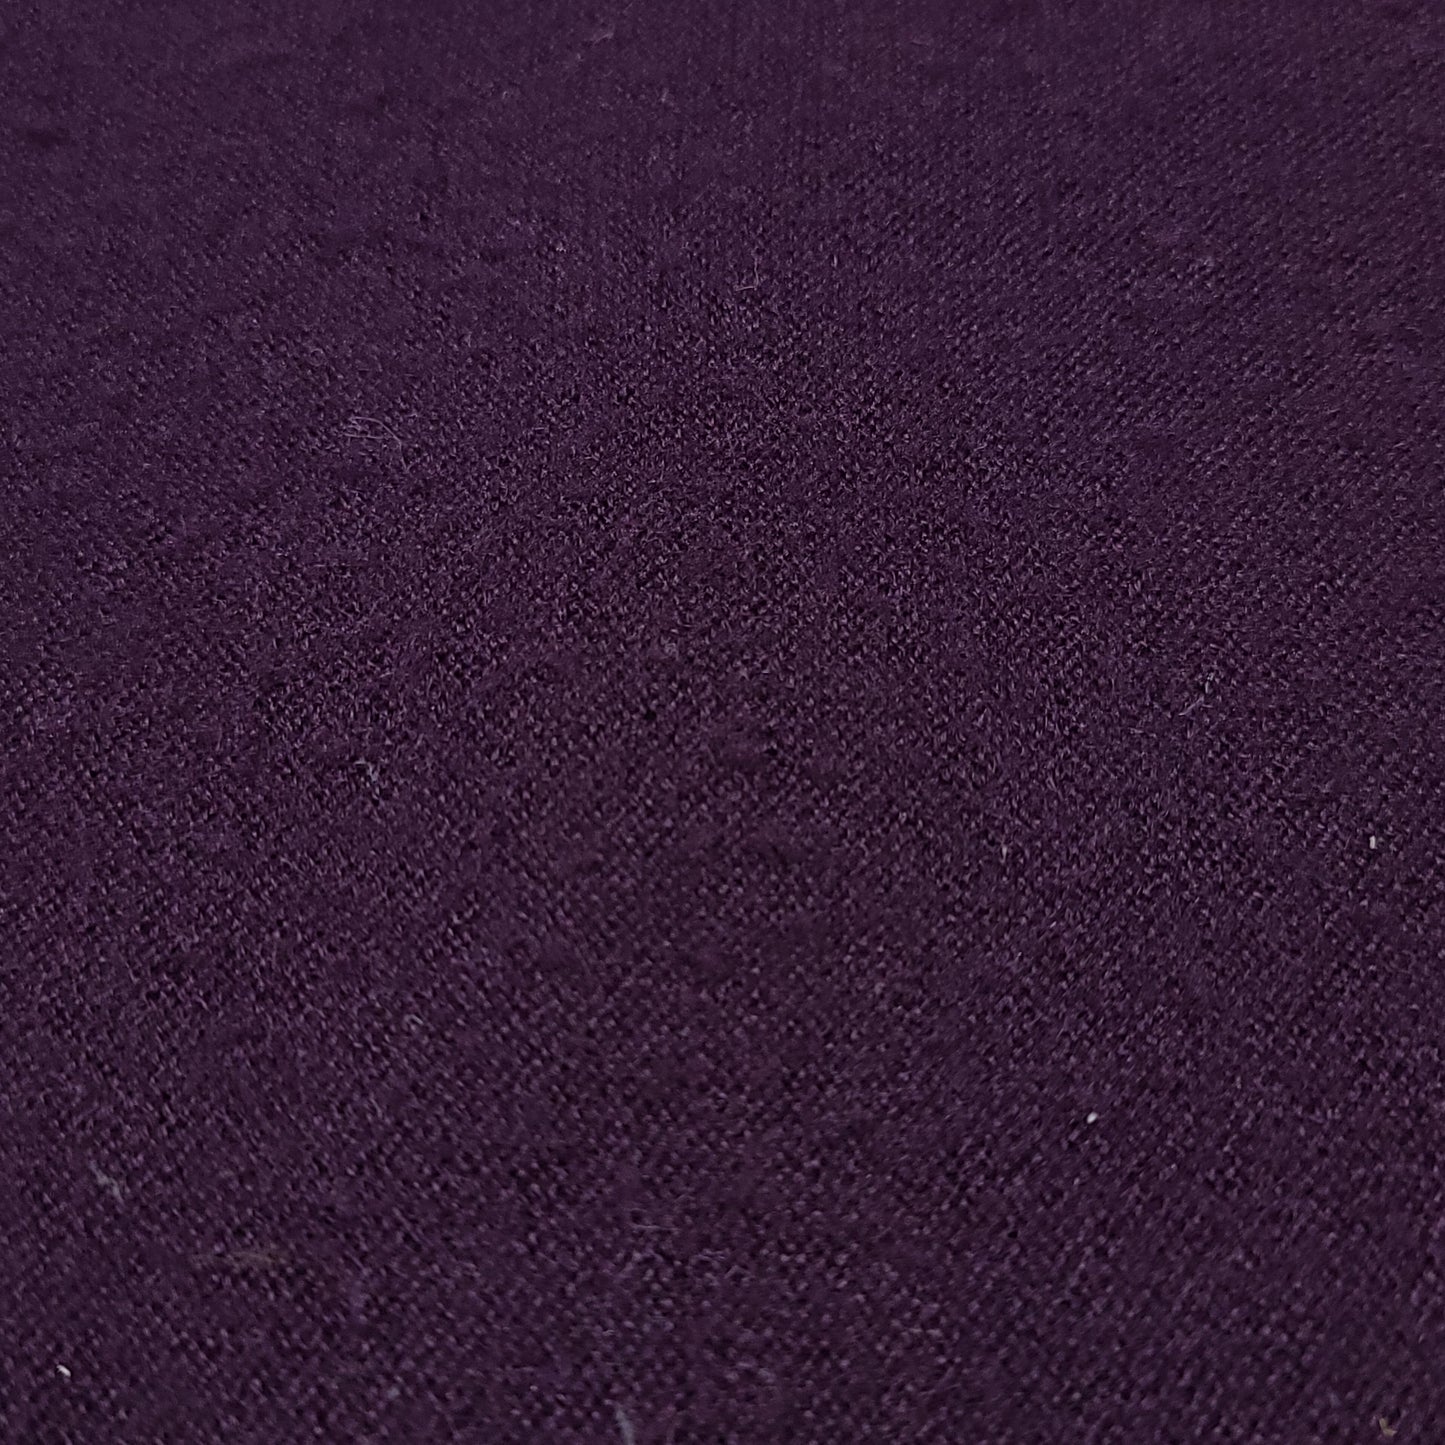 Izod Lacoste Purple V Neck Wool Sweater